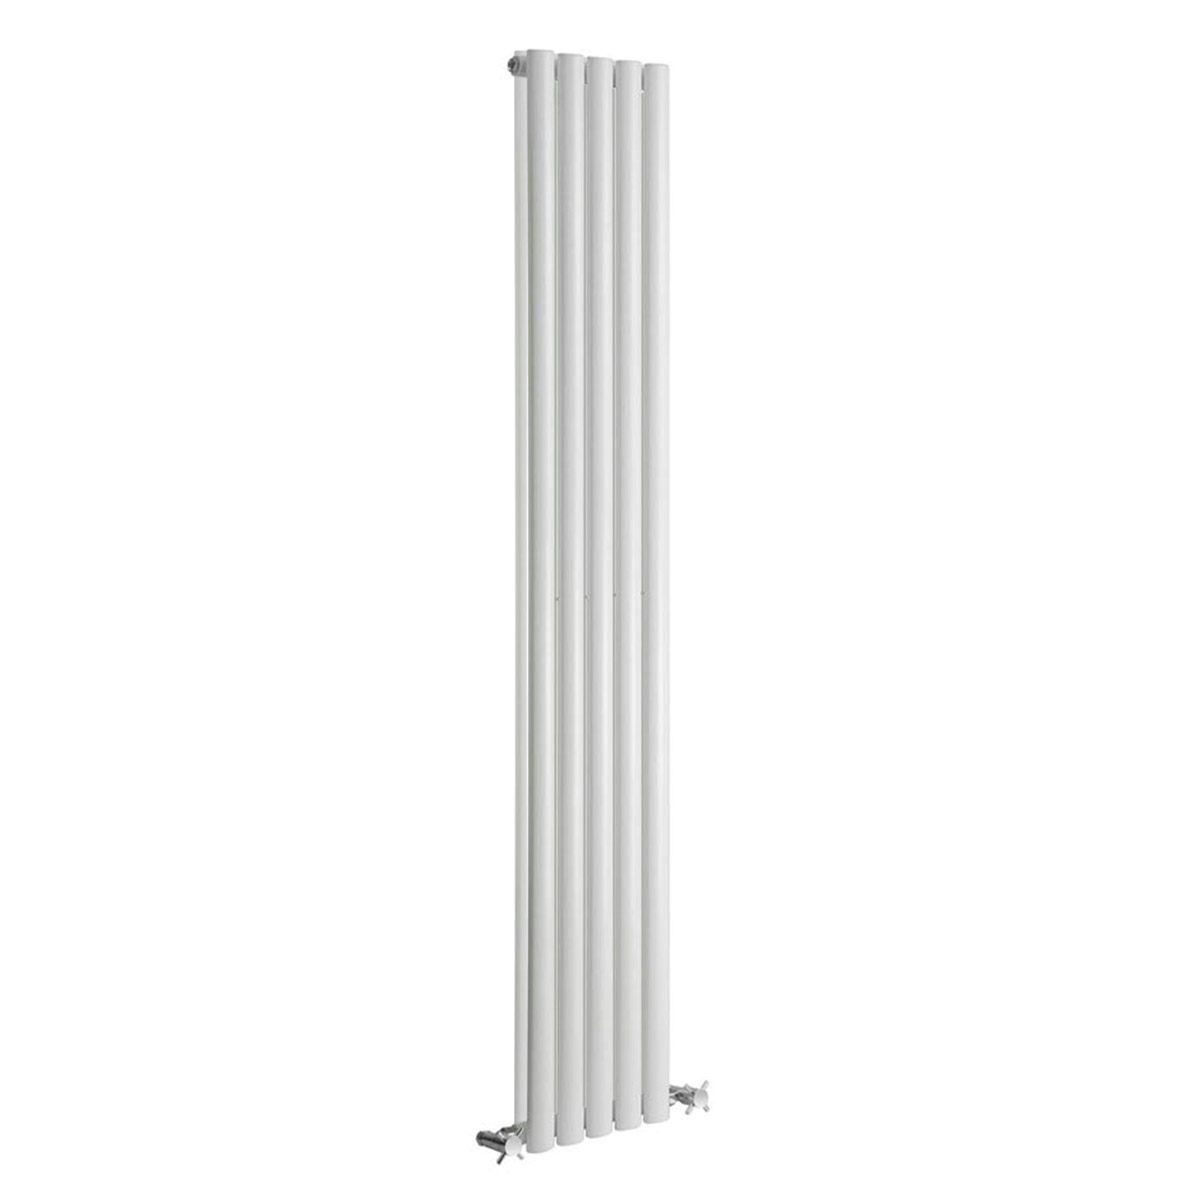 Reina Neva white double vertical steel designer radiator 1500 x 295